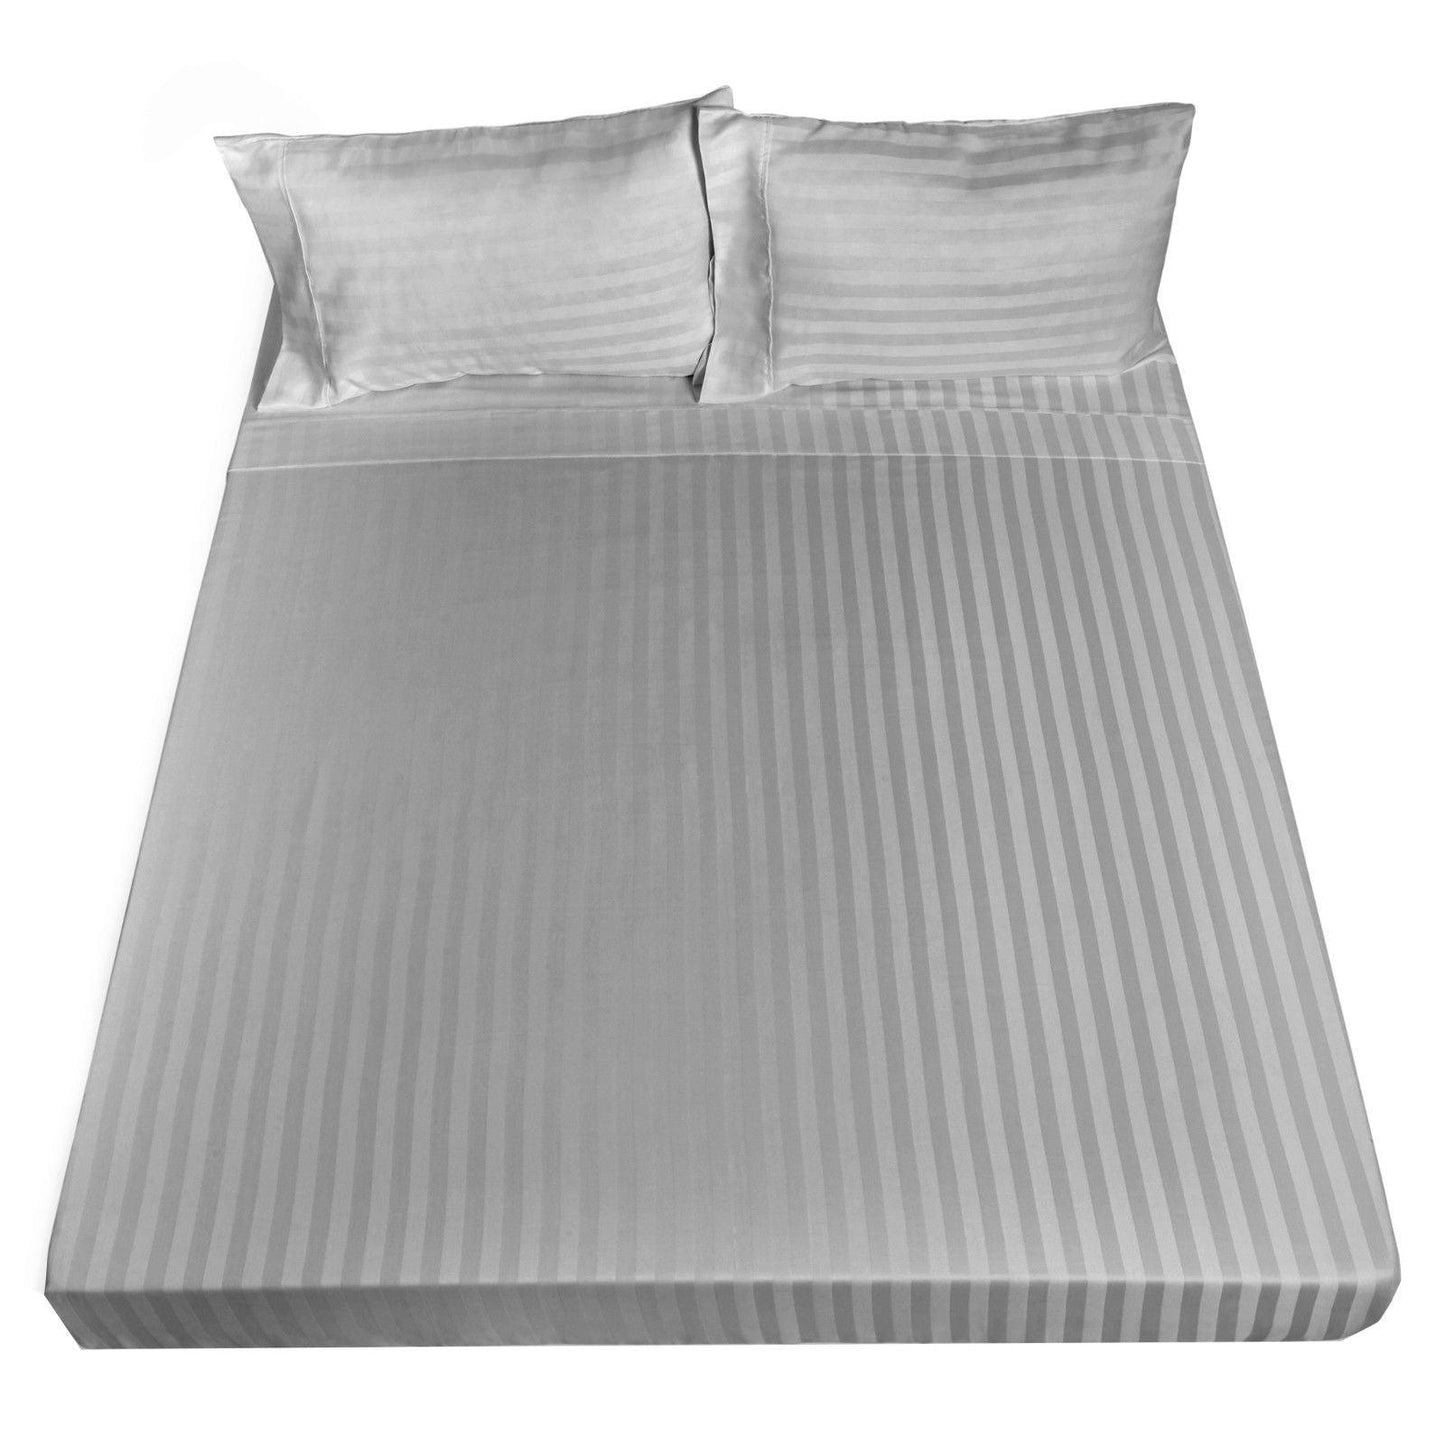 Royal Comfort 1200TC Sheet Set Damask Cotton Blend Ultra Soft Sateen Bedding - Queen - Silver